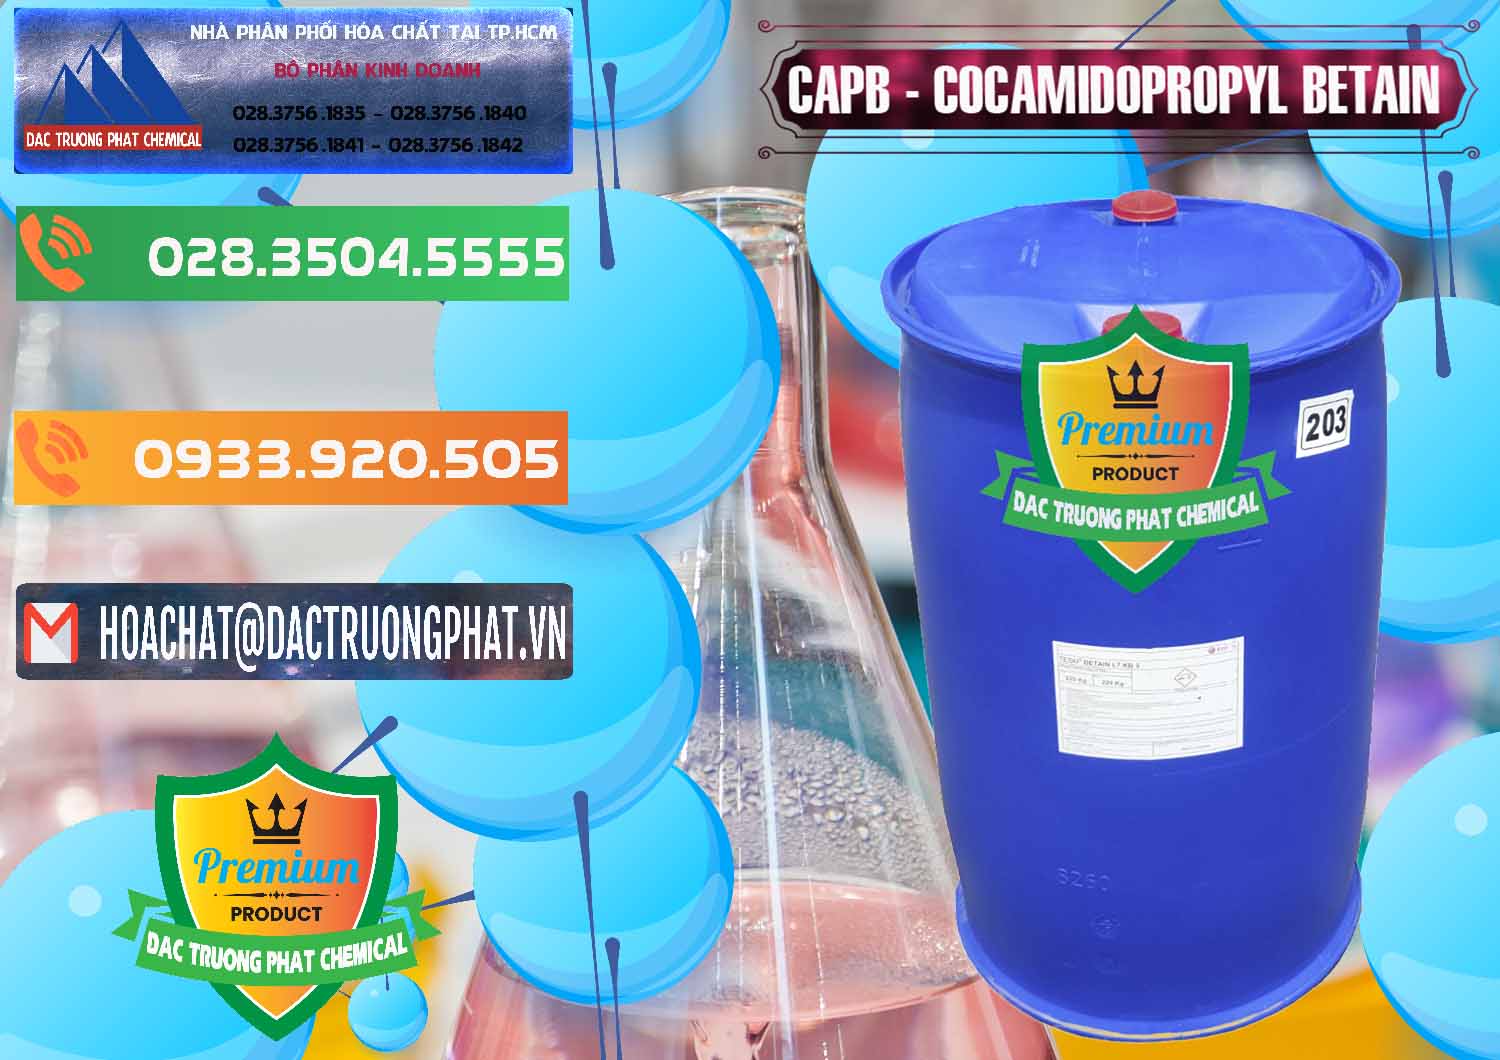 Chuyên cung ứng và bán Cocamidopropyl Betaine - CAPB Tego Indonesia - 0327 - Nhập khẩu - cung cấp hóa chất tại TP.HCM - hoachatxulynuoc.com.vn